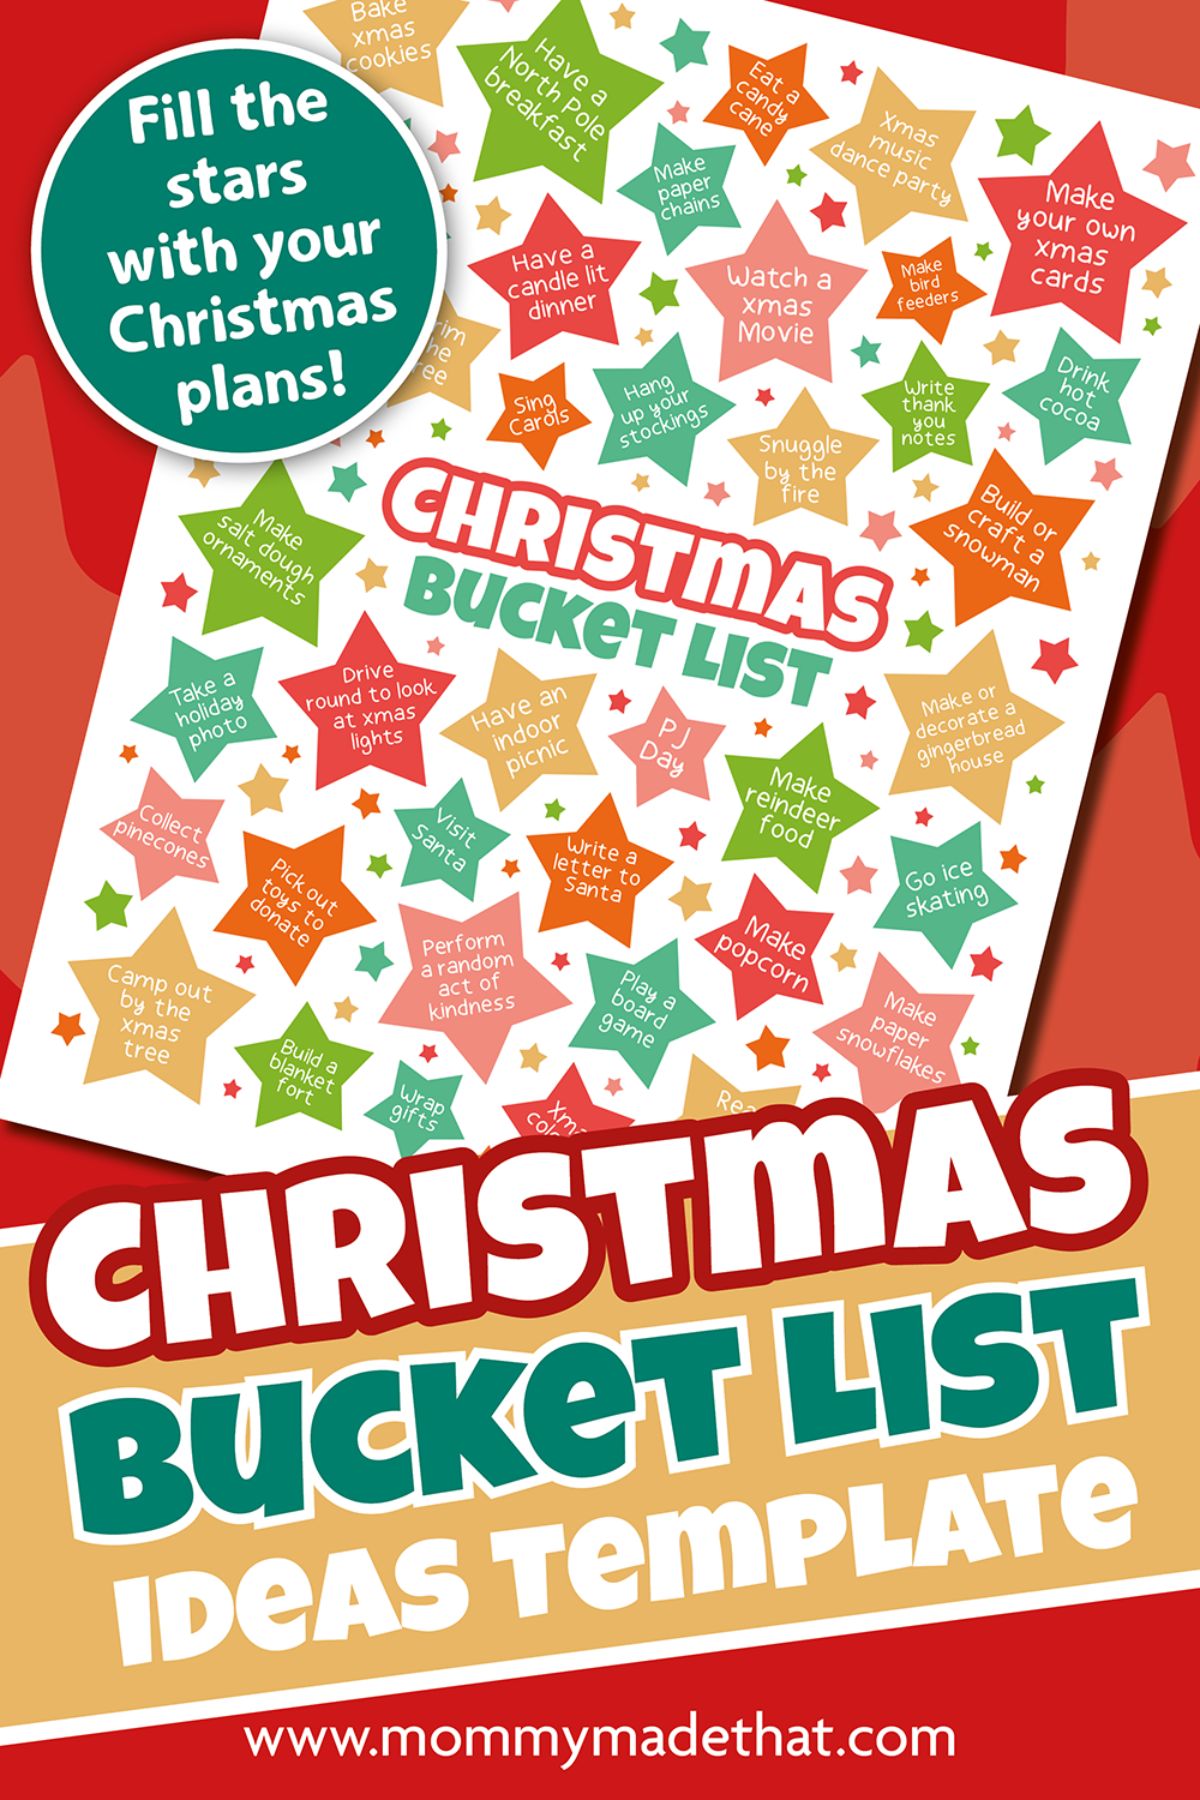 Christmas bucket list printable